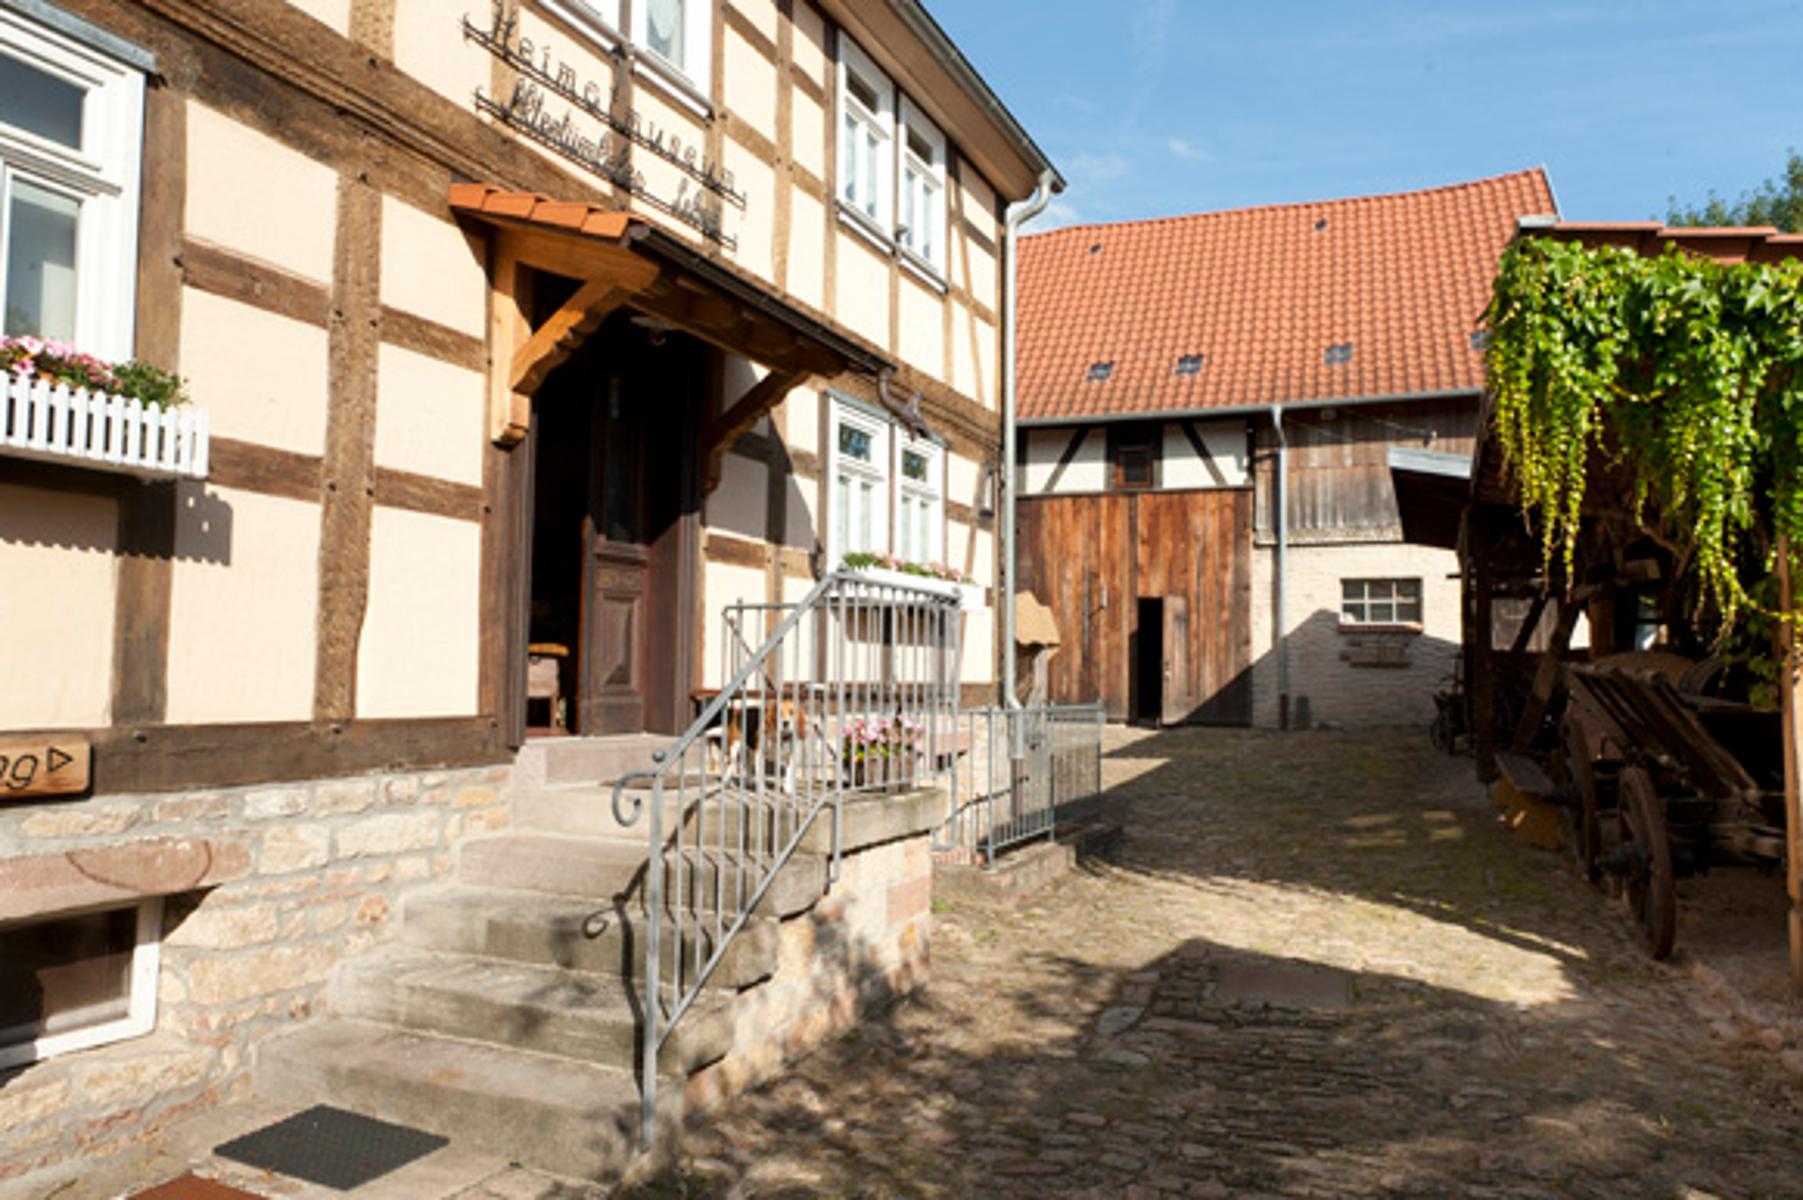 1997 hat der Heimat- und Geschichtsverein Bad Soden-Salmünster e.V. 1978 die ehemalige Hofreite inmitten der Altstadt Salmünster zu einem Heimatmuseum hergerichtet.